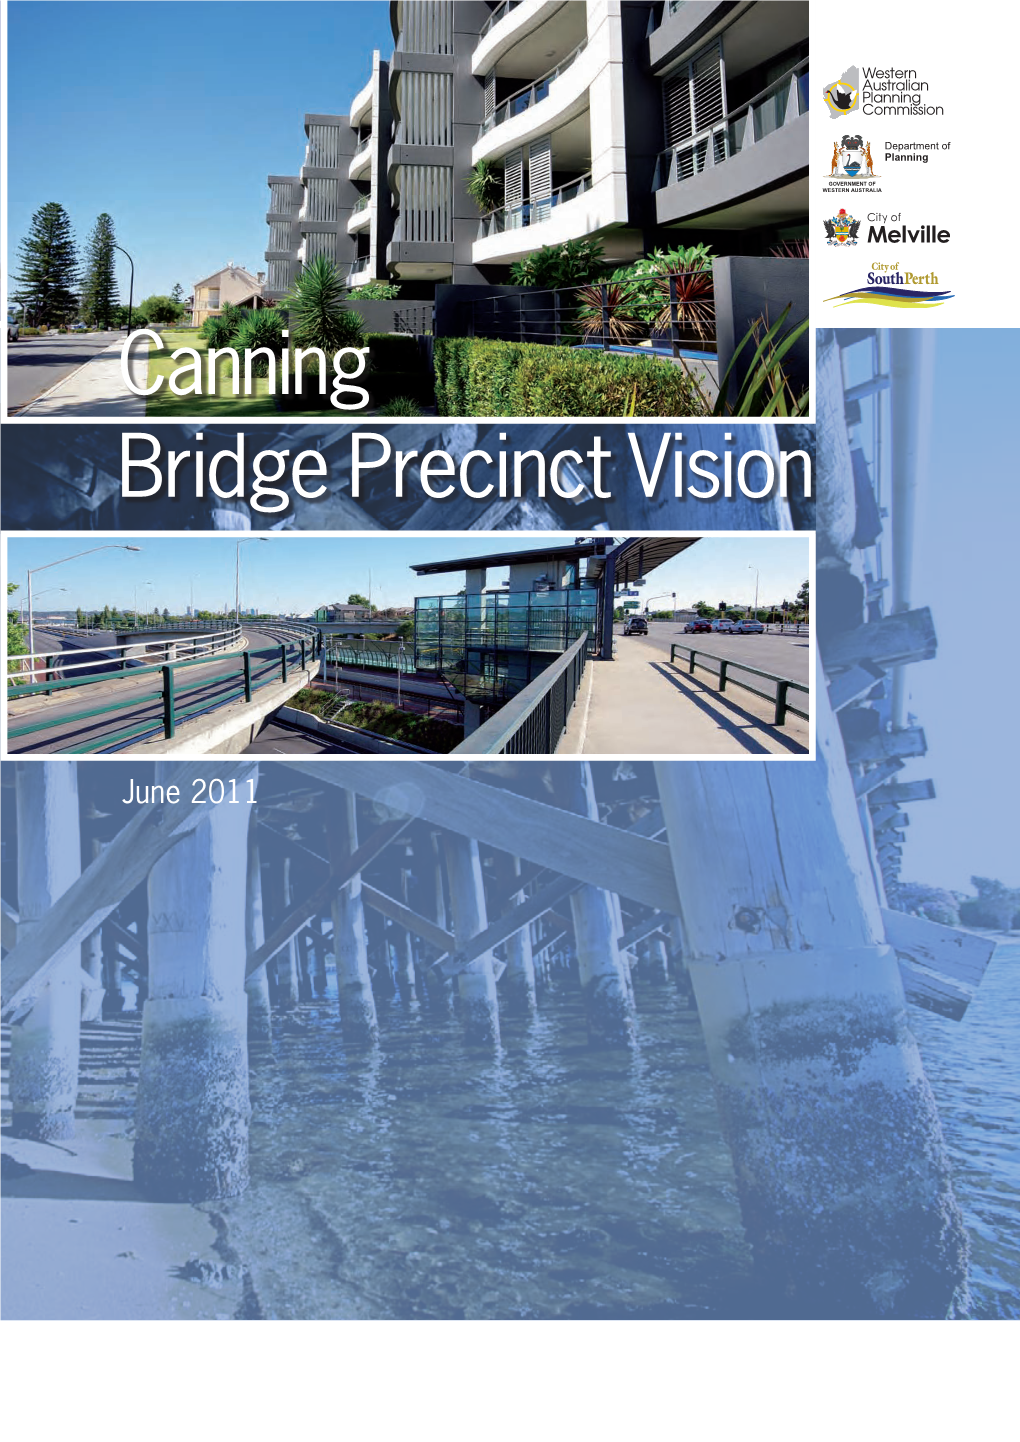 Canning Bridge Precinct Vision